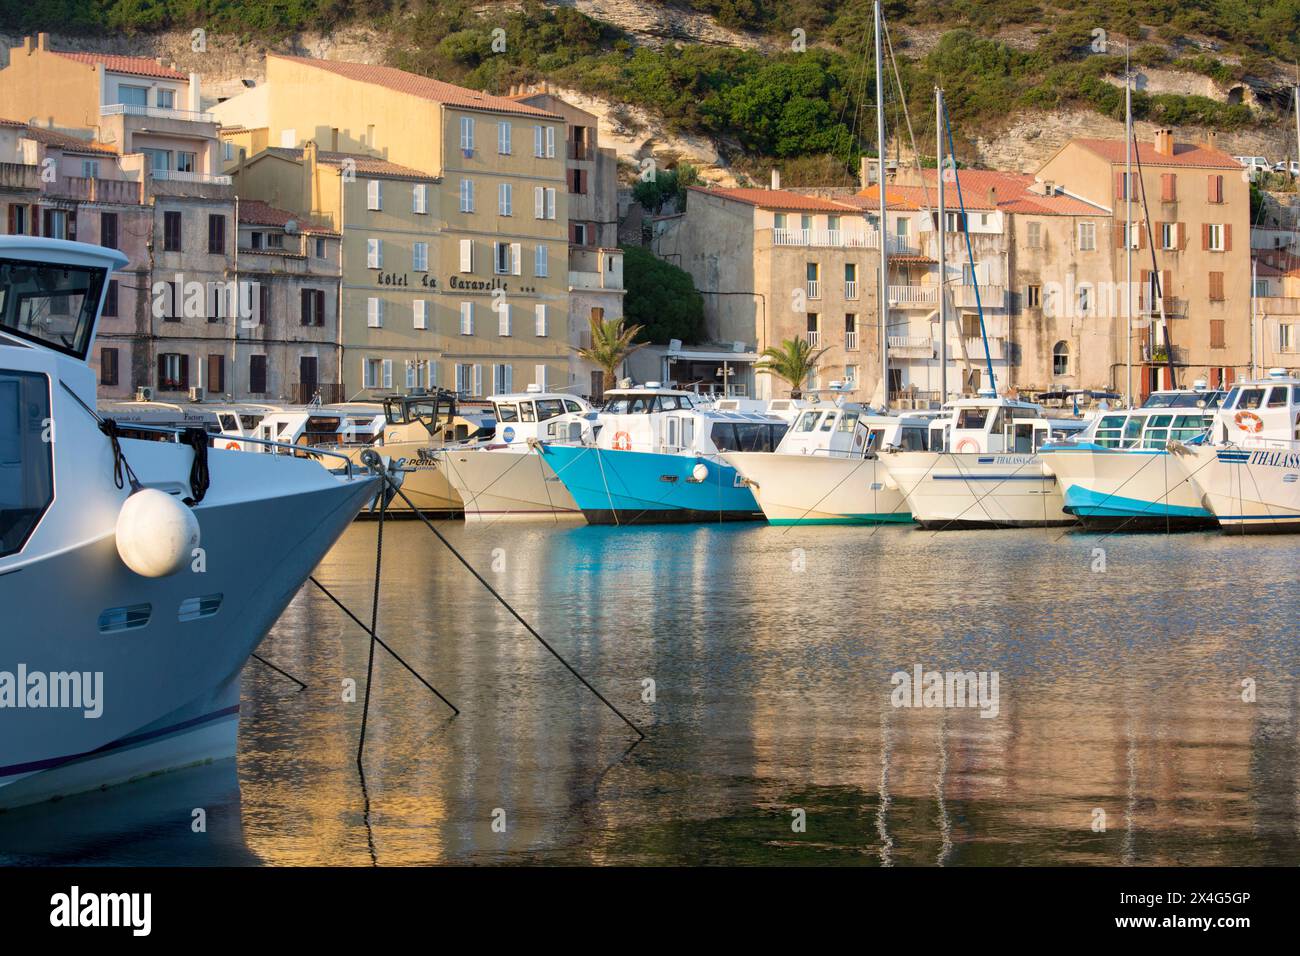 Bonifacio, Corse-du-Sud, Korsika, Frankreich. Blick über den Hafen bei Sonnenaufgang, verankerte Sightseeing-Boote spiegeln sich im ruhigen Wasser. Stockfoto